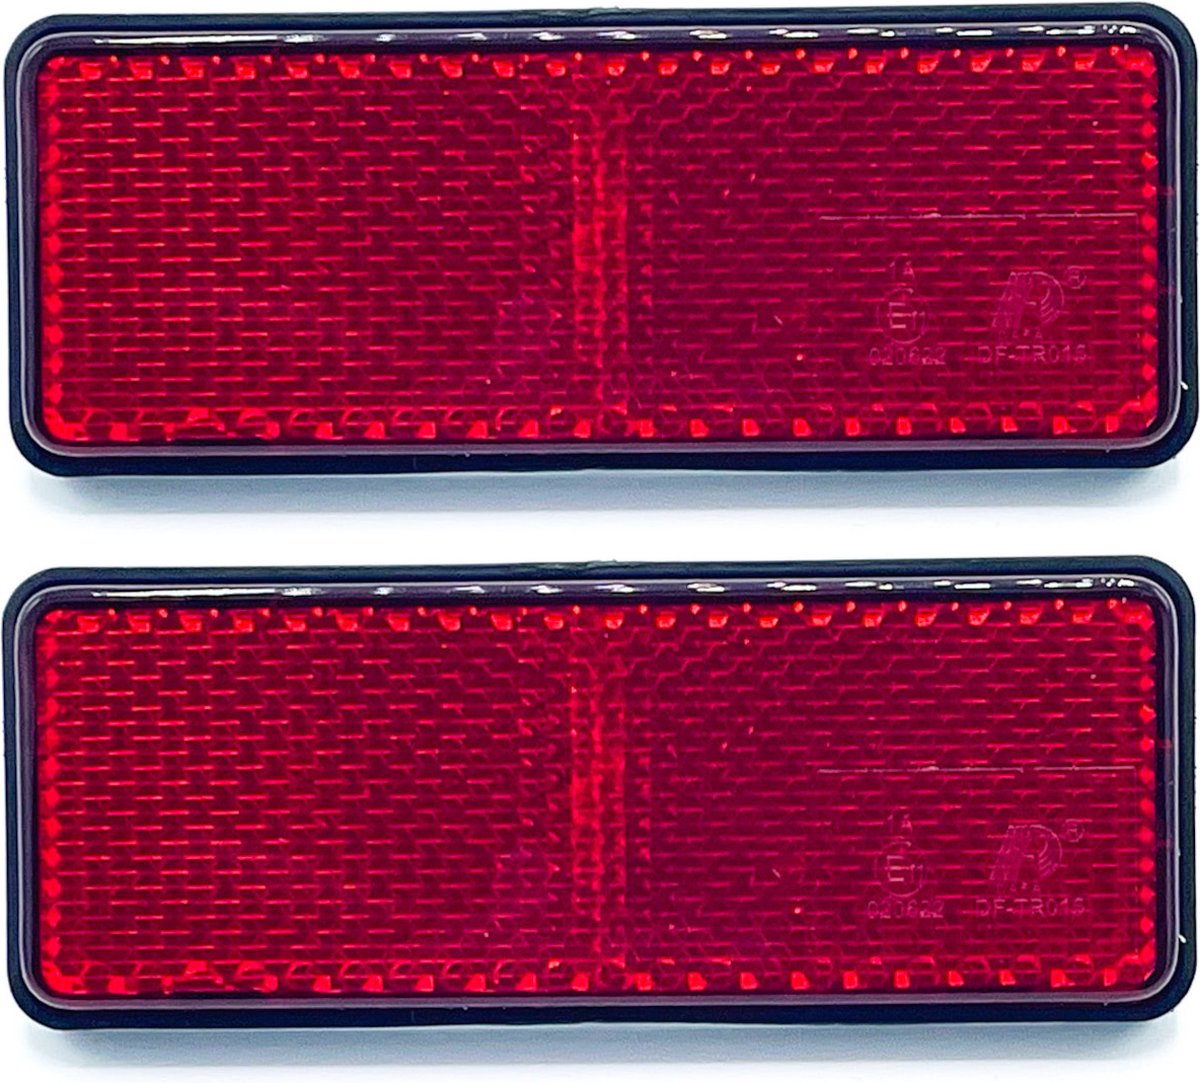 Reflector rood schroefbaar 95x38 E keur (2 stuks)